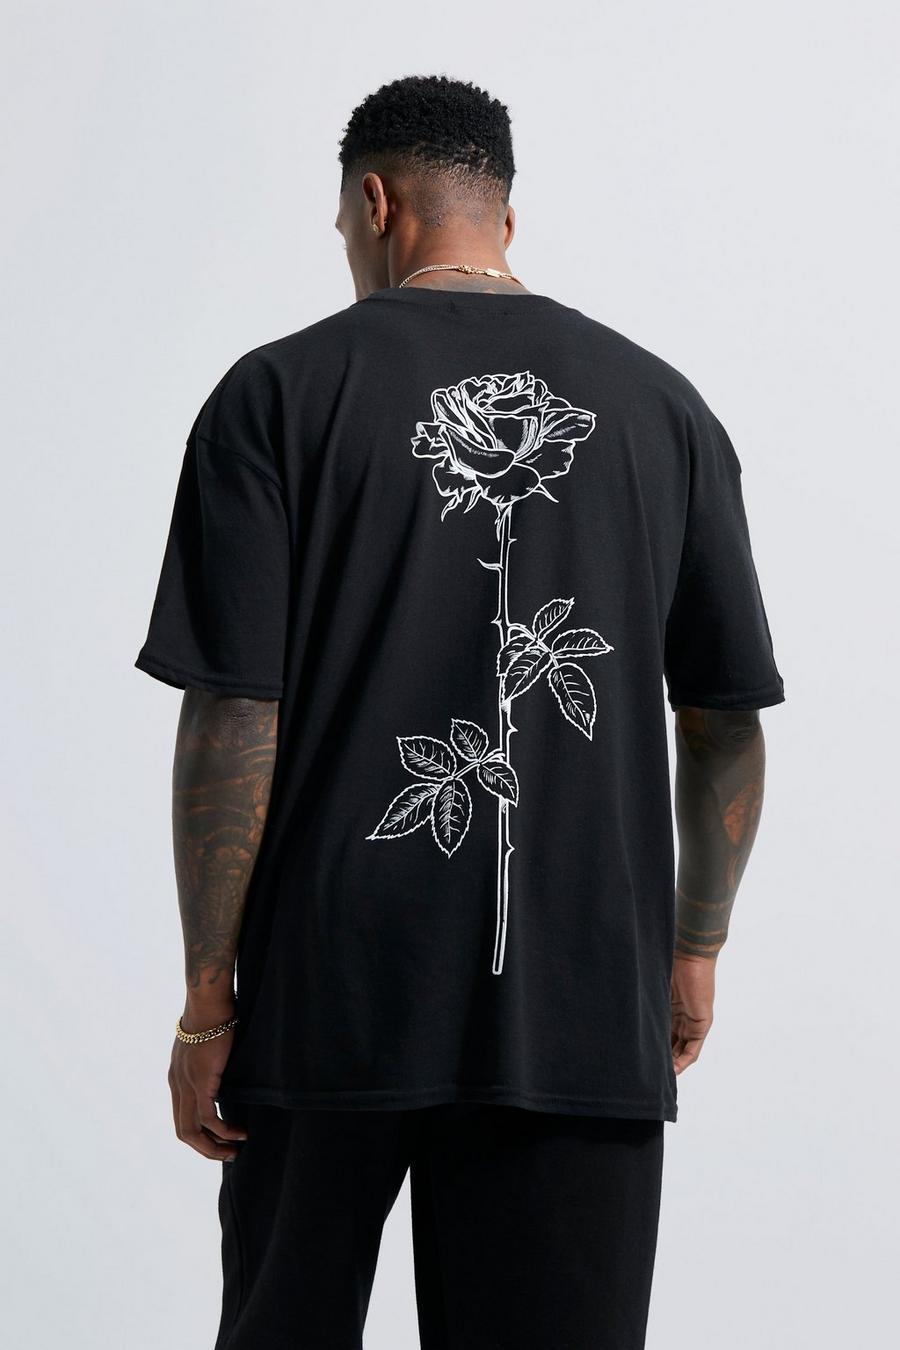 שחור טישרט עם הדפס גבעול ורד מאויר בקו